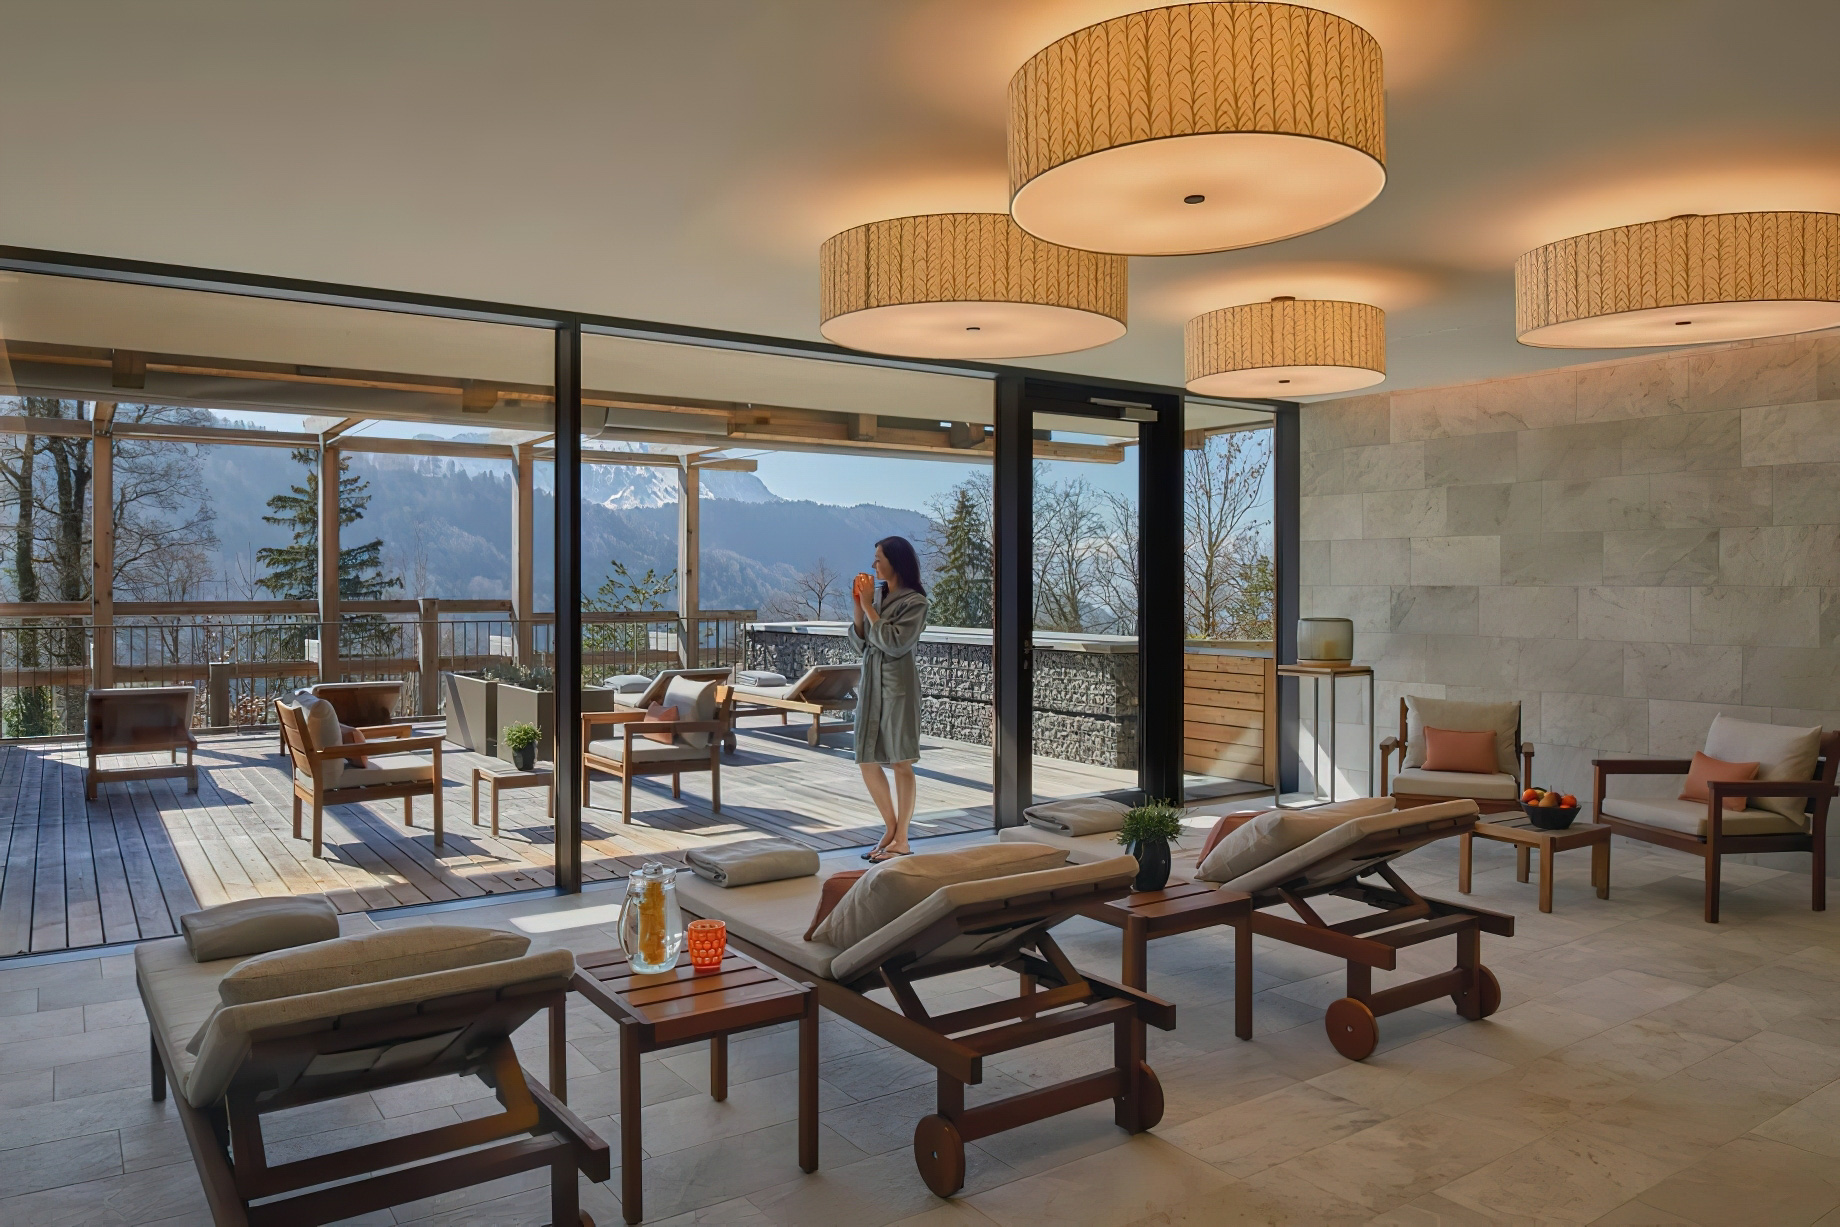 Waldhotel – Burgenstock Hotels & Resort – Obburgen, Switzerland – Spa Exteior Deck